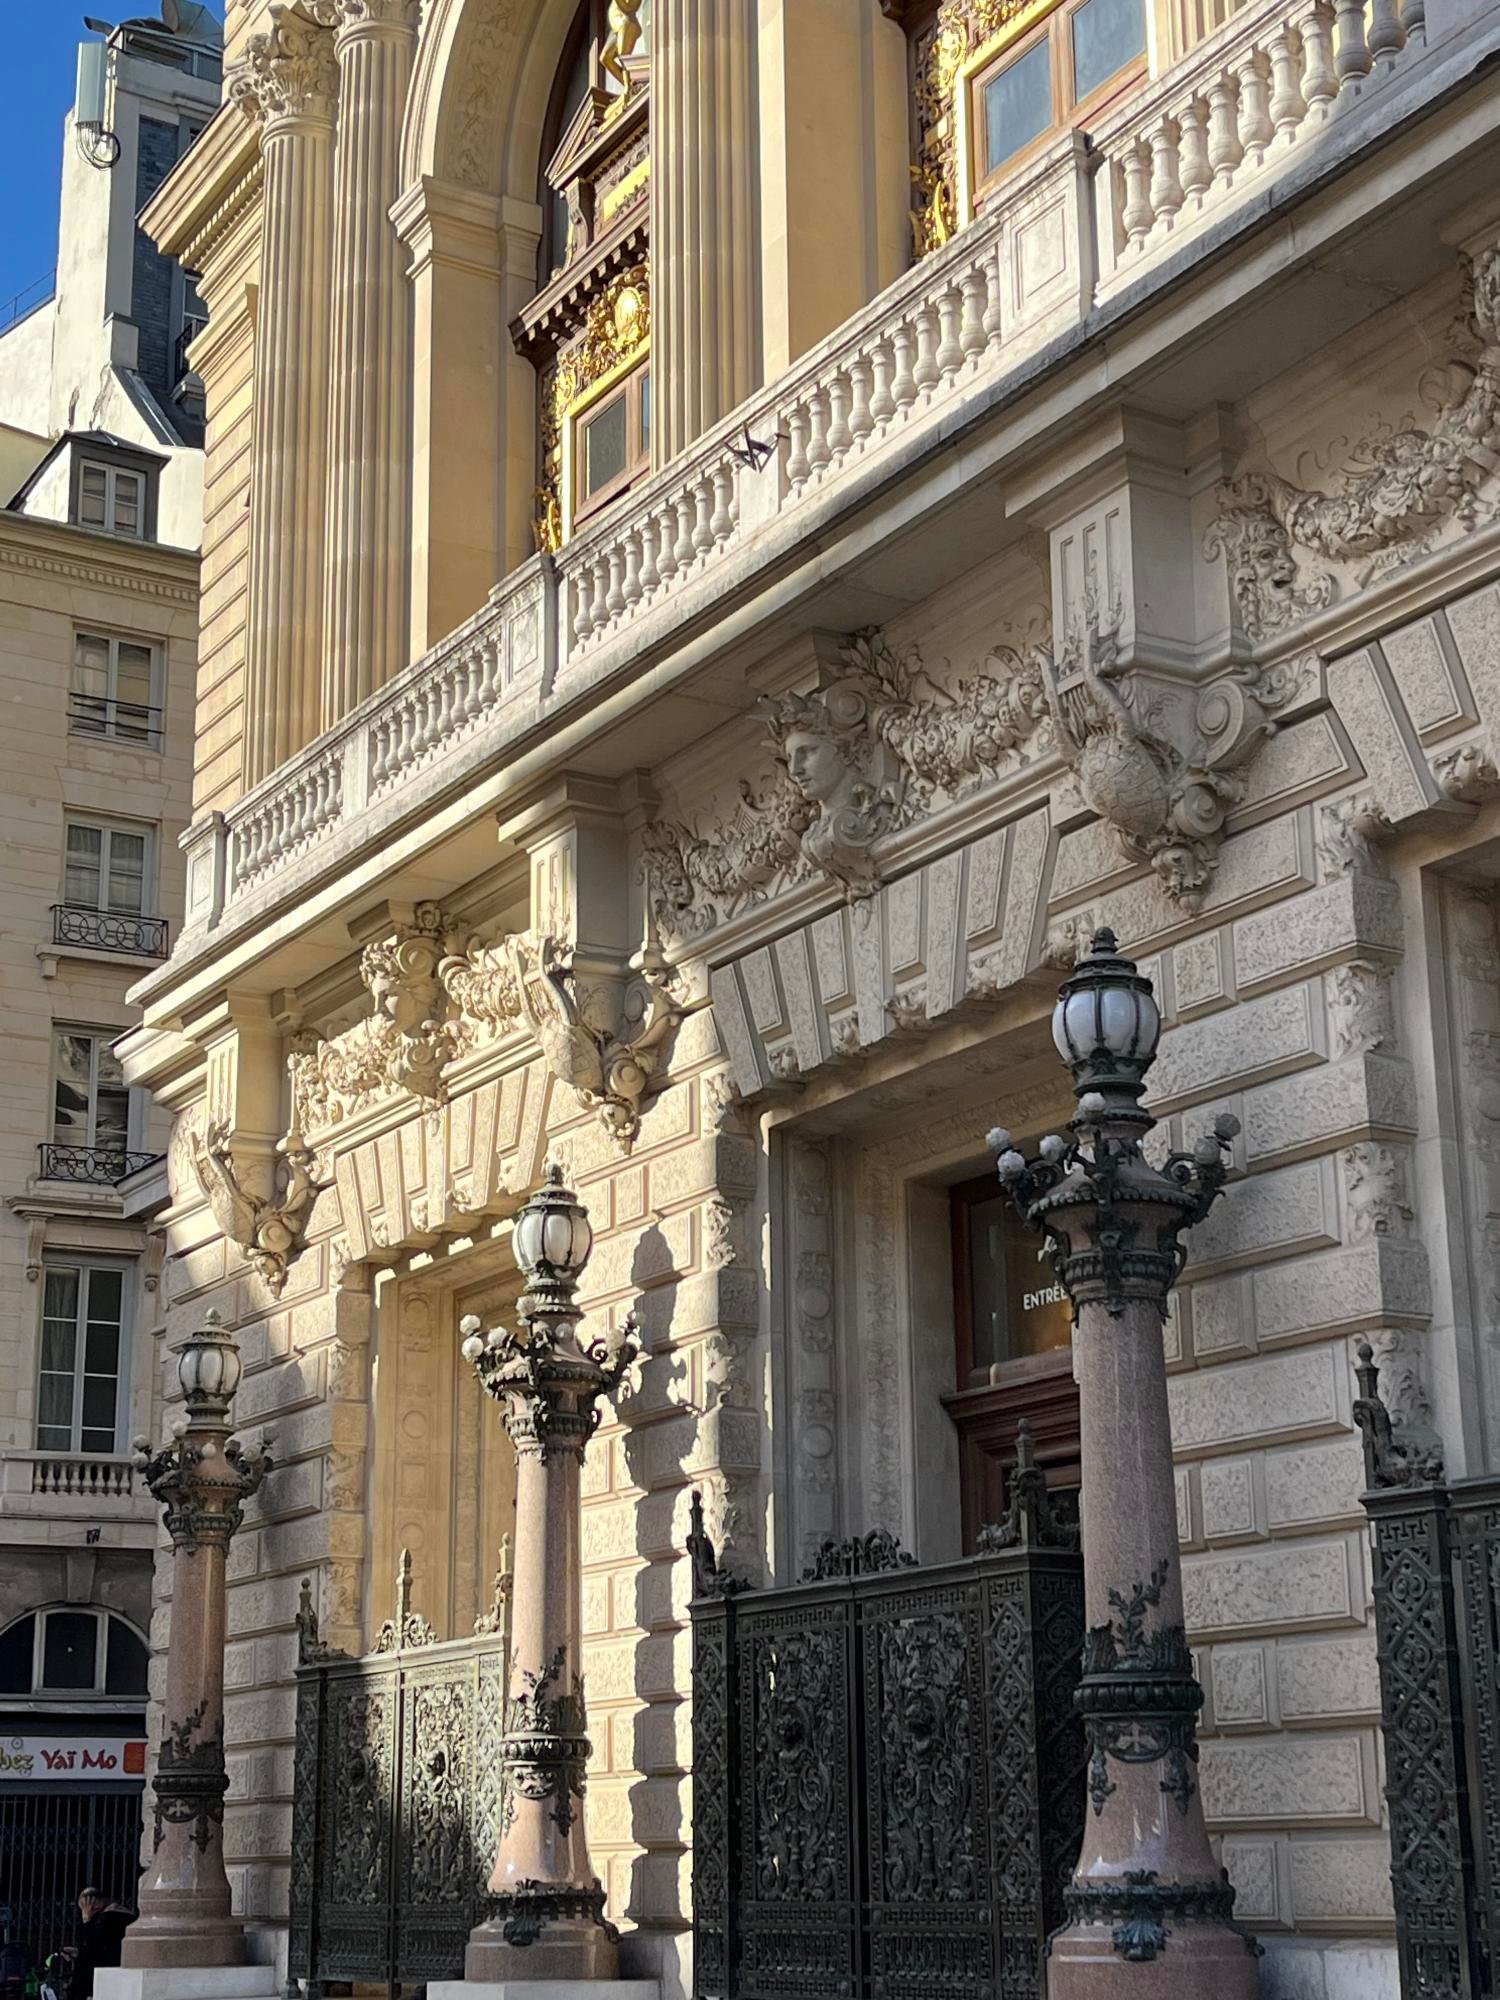 La salle Favart, l'Opéra Comique, se situe place Boieldieu derrière l'Hôtel Gramont Paris